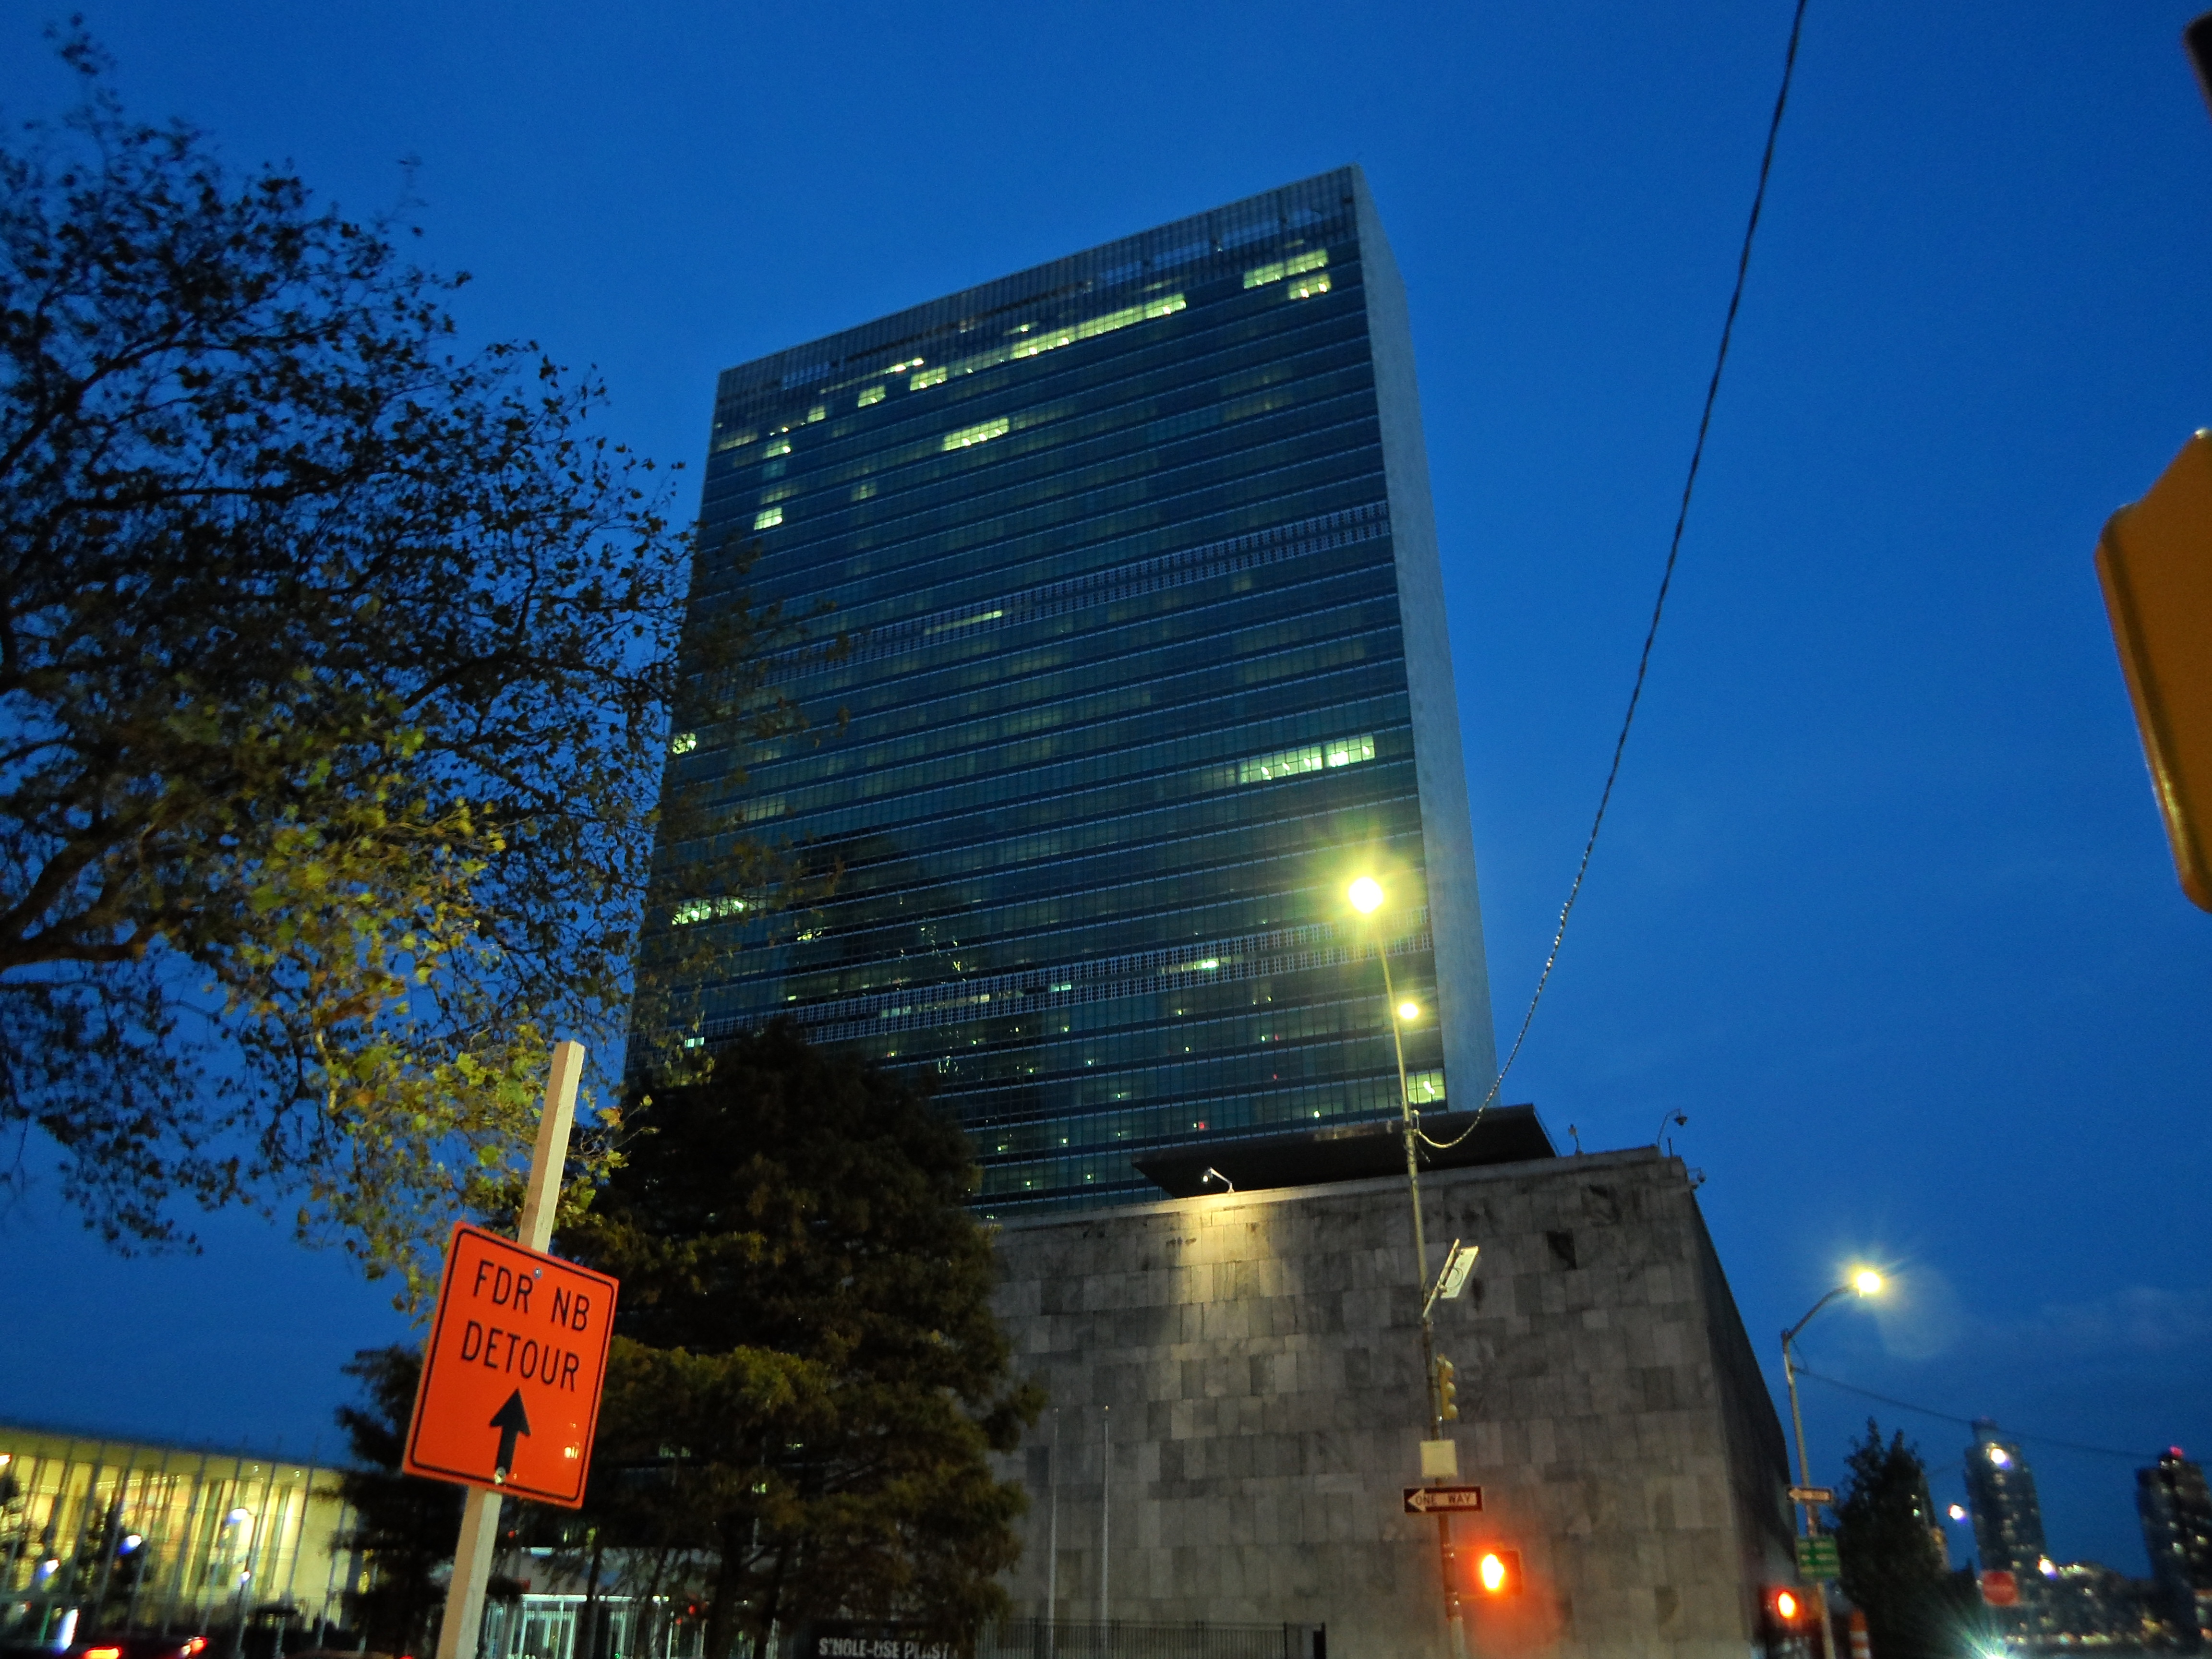 إطفاء اضاءة مبنى الأمم المتحدة مع بدء إجراءات التقشف المالي